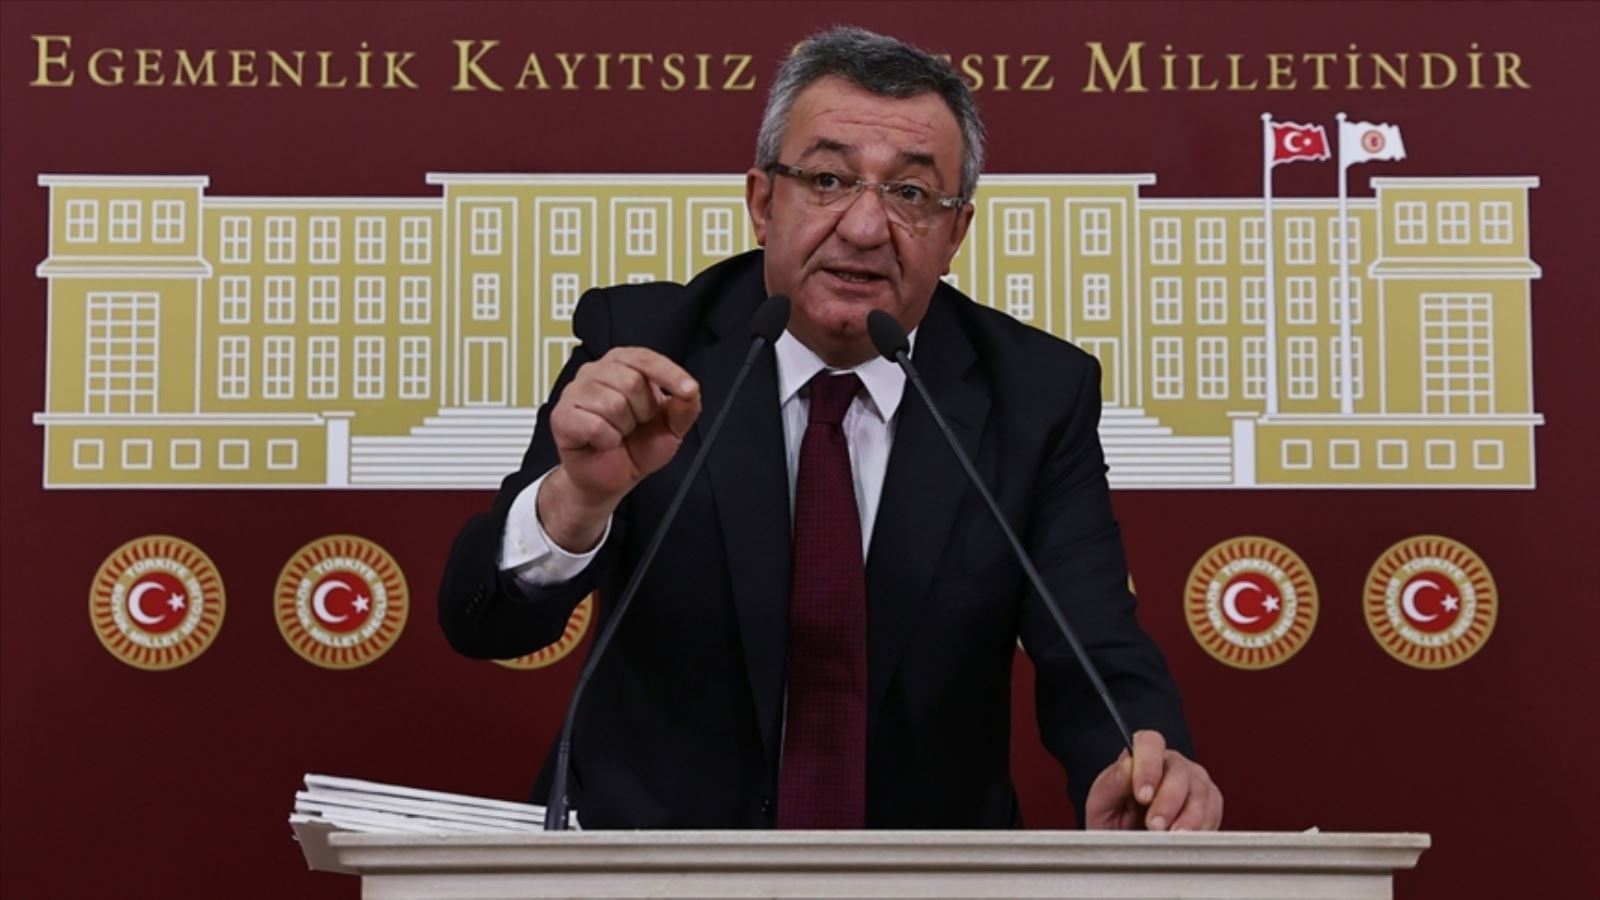 Hukukçulardan Süleyman Soylu'nun 'siyasi darbe' açıklamasına tepki: Başkası dese tutuklanır